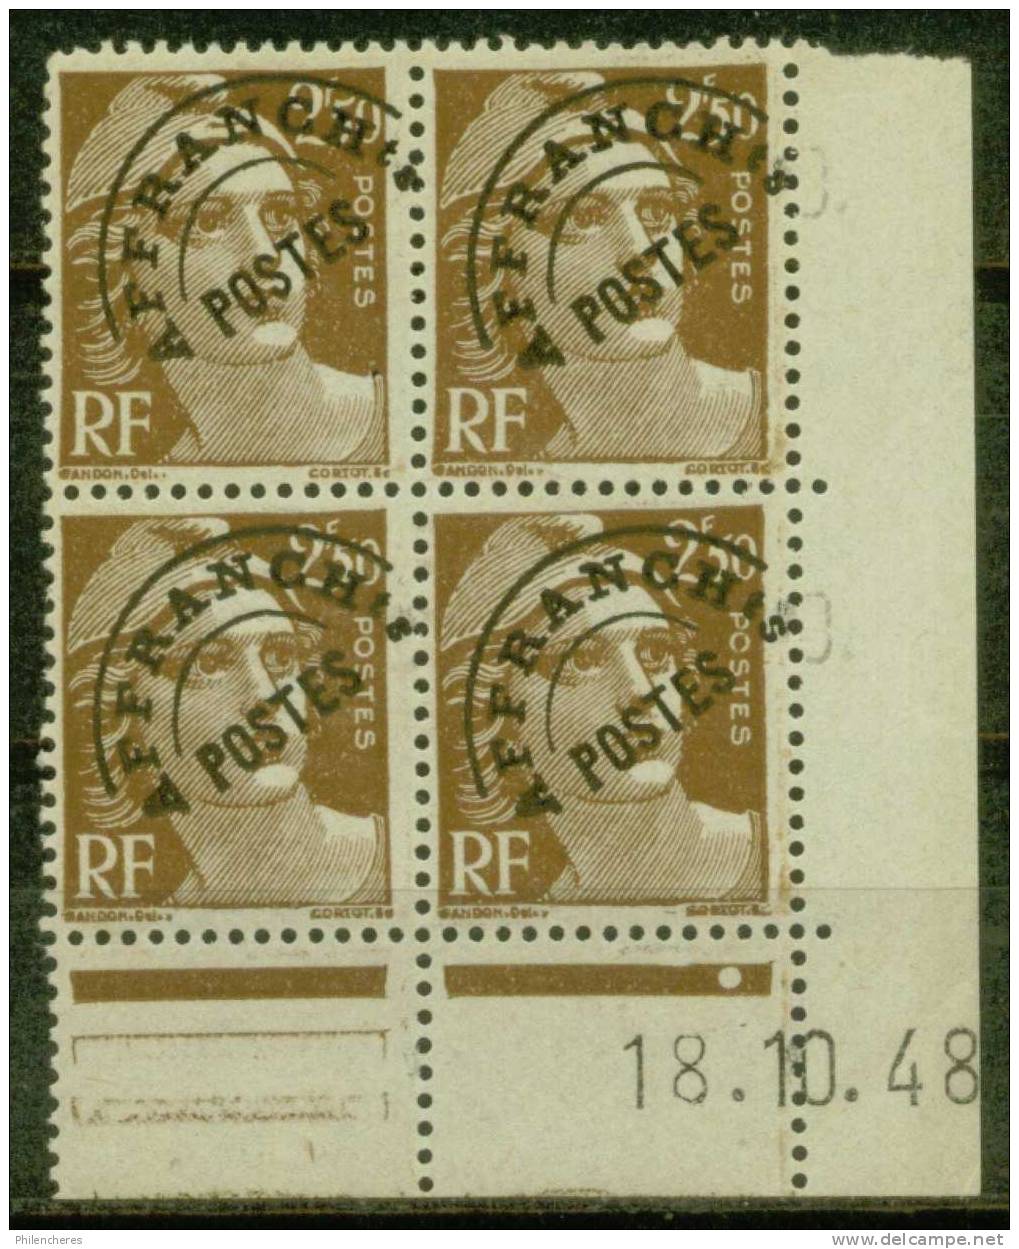 France Bloc De 4 - Coin Daté 1948 - Yvert Préoblitéré N° 95 Xx - Cote 15 Euros - Prix De Départ 4,5 Euros - Préoblitérés